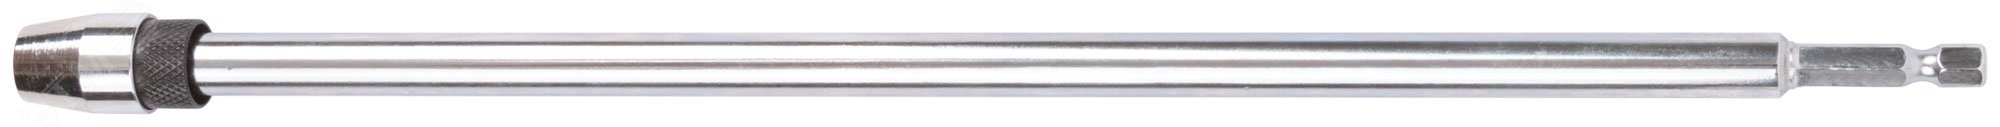 Удлинитель для перовых сверл с хвостовиком под биту (быстрая замена сверла) 300 мм 36208 FIT - превью